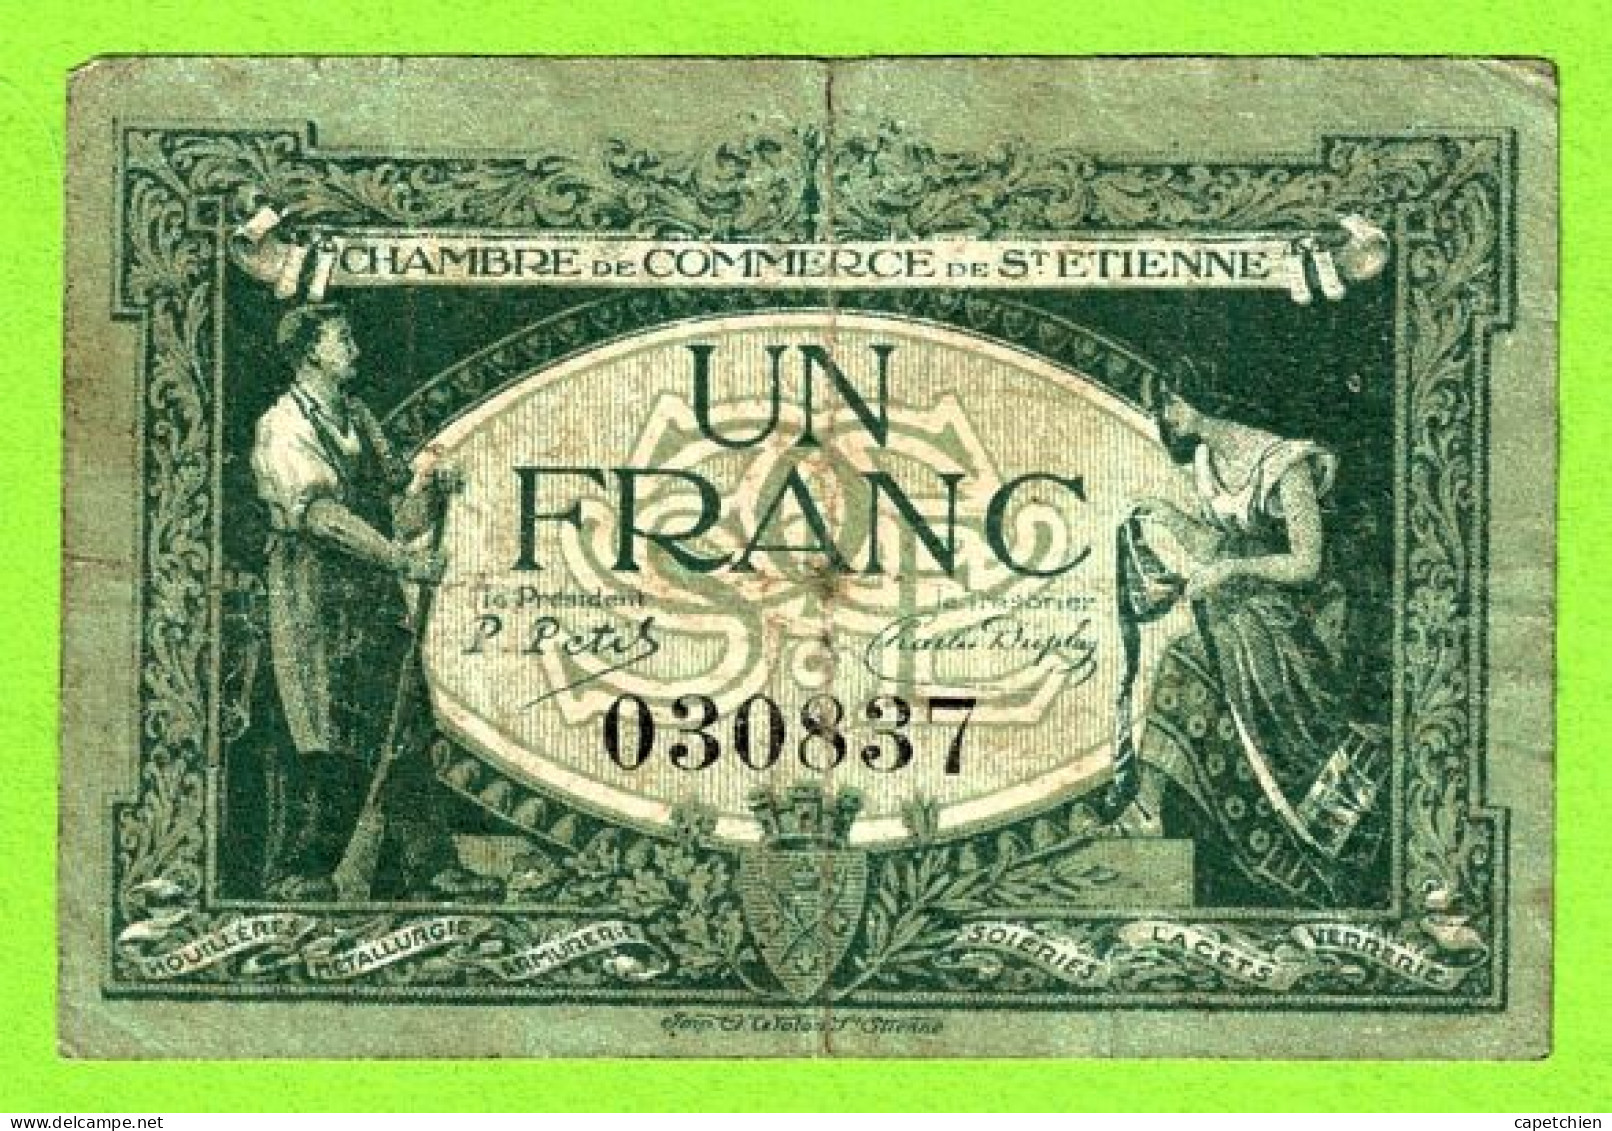 FRANCE / CHAMBRE De COMMERCE De SAINT ETIENNE / 1 FRANC / 12 JANVIER 1921 / N°030837 SERIE - Camera Di Commercio